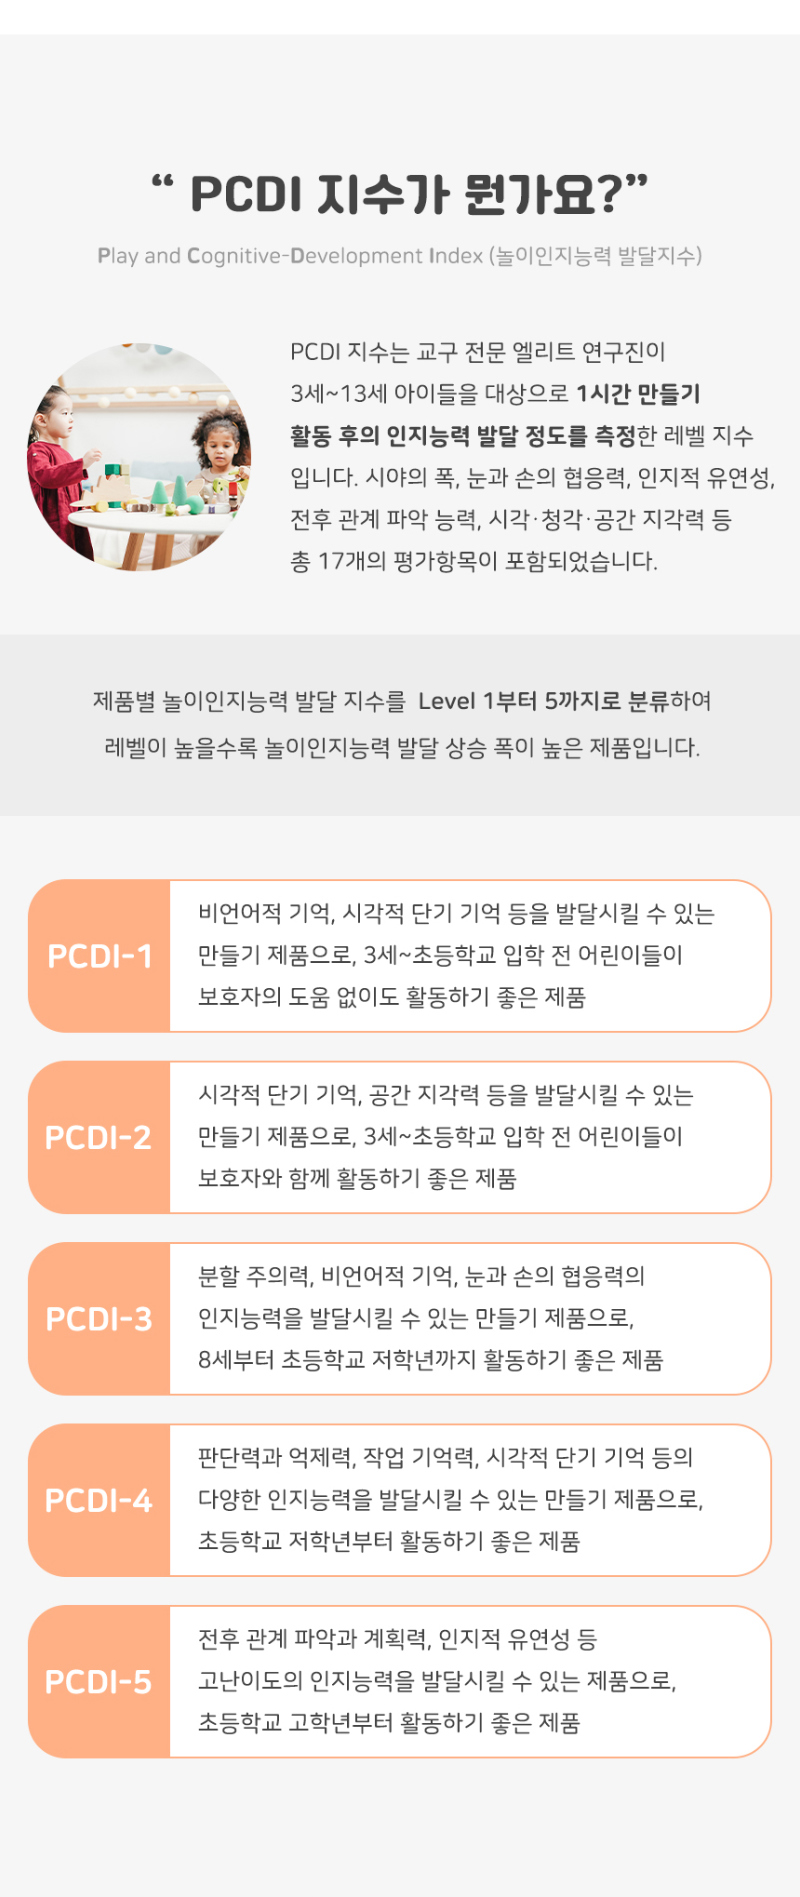 민화샵 PCDI 지수 설명2